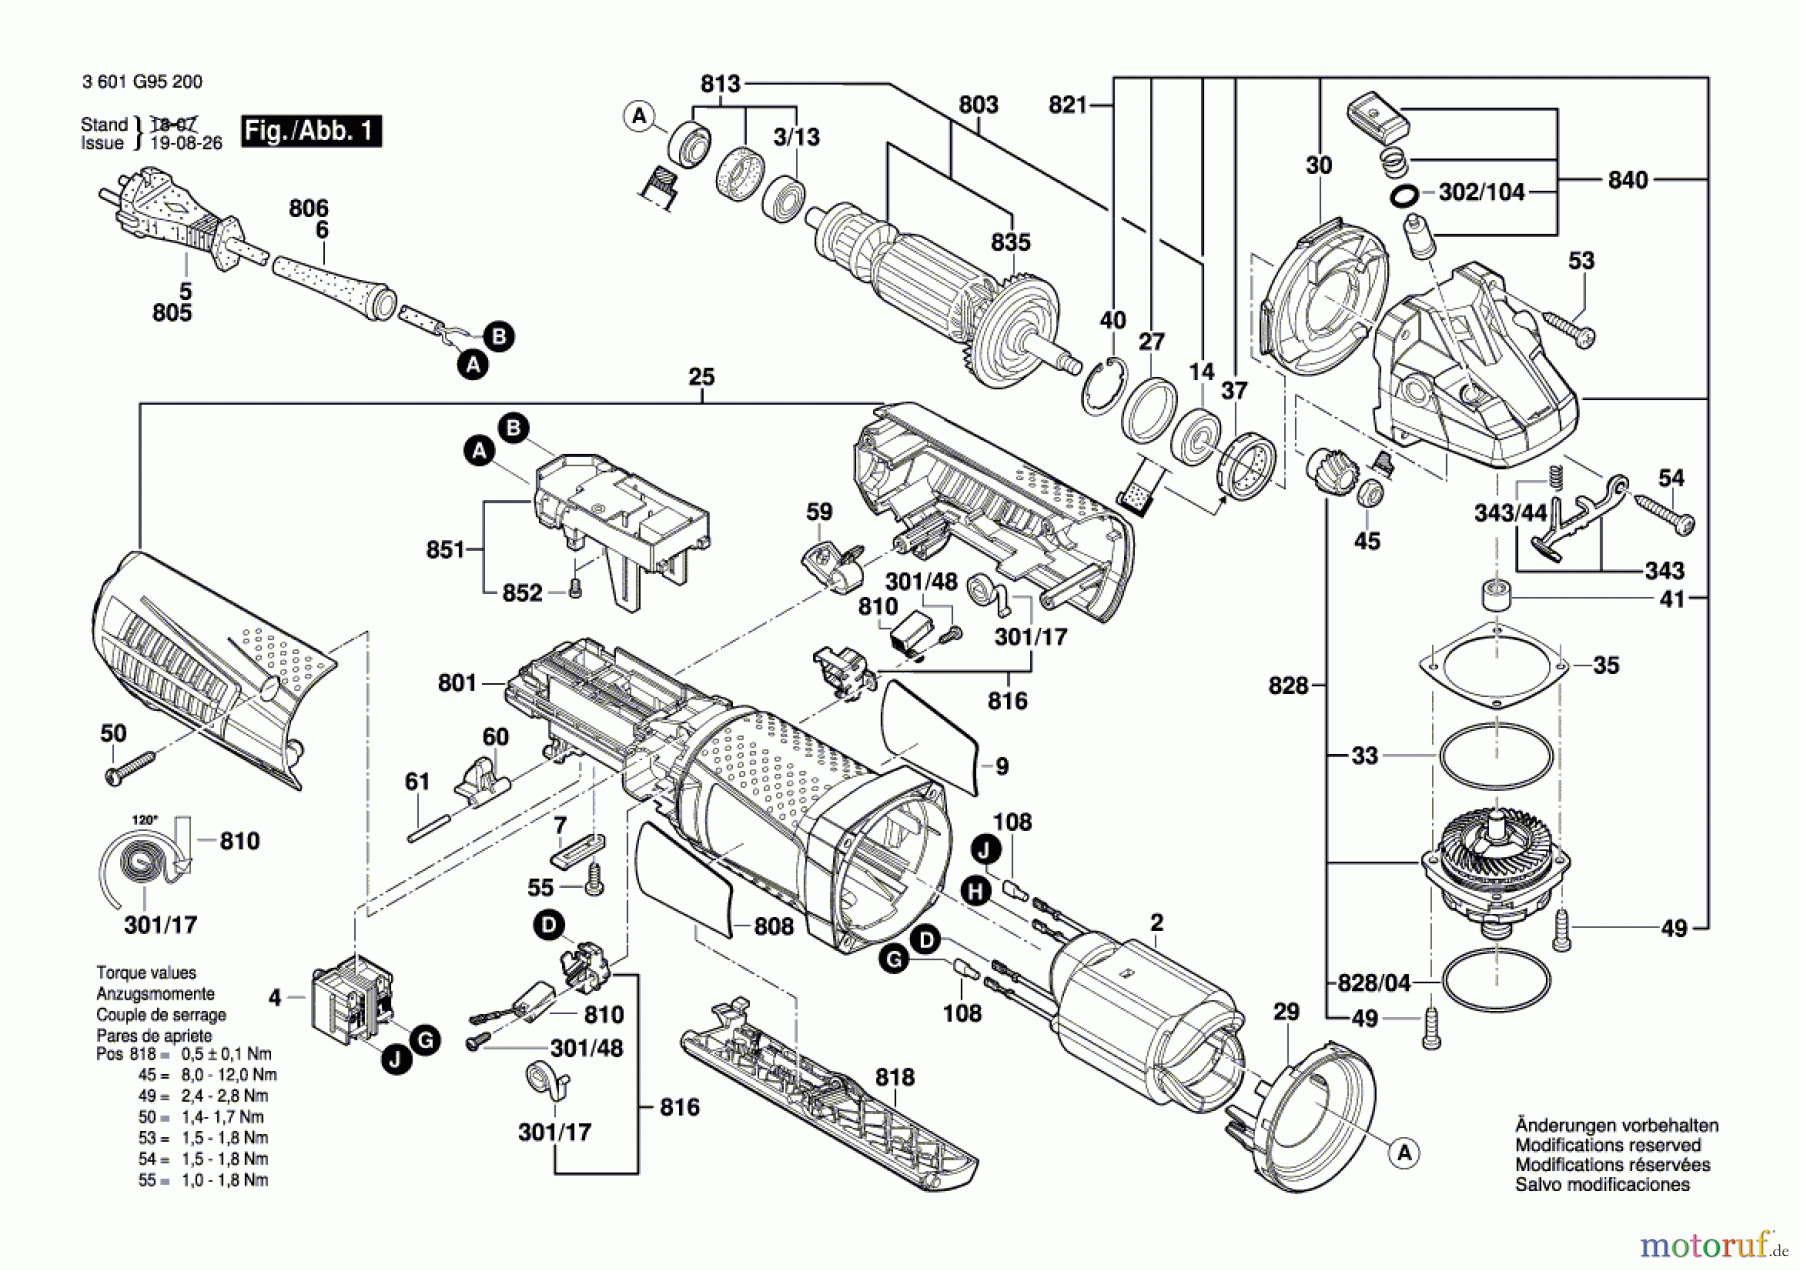  Bosch Werkzeug Winkelschleifer GWS 15-150 CIP Seite 1